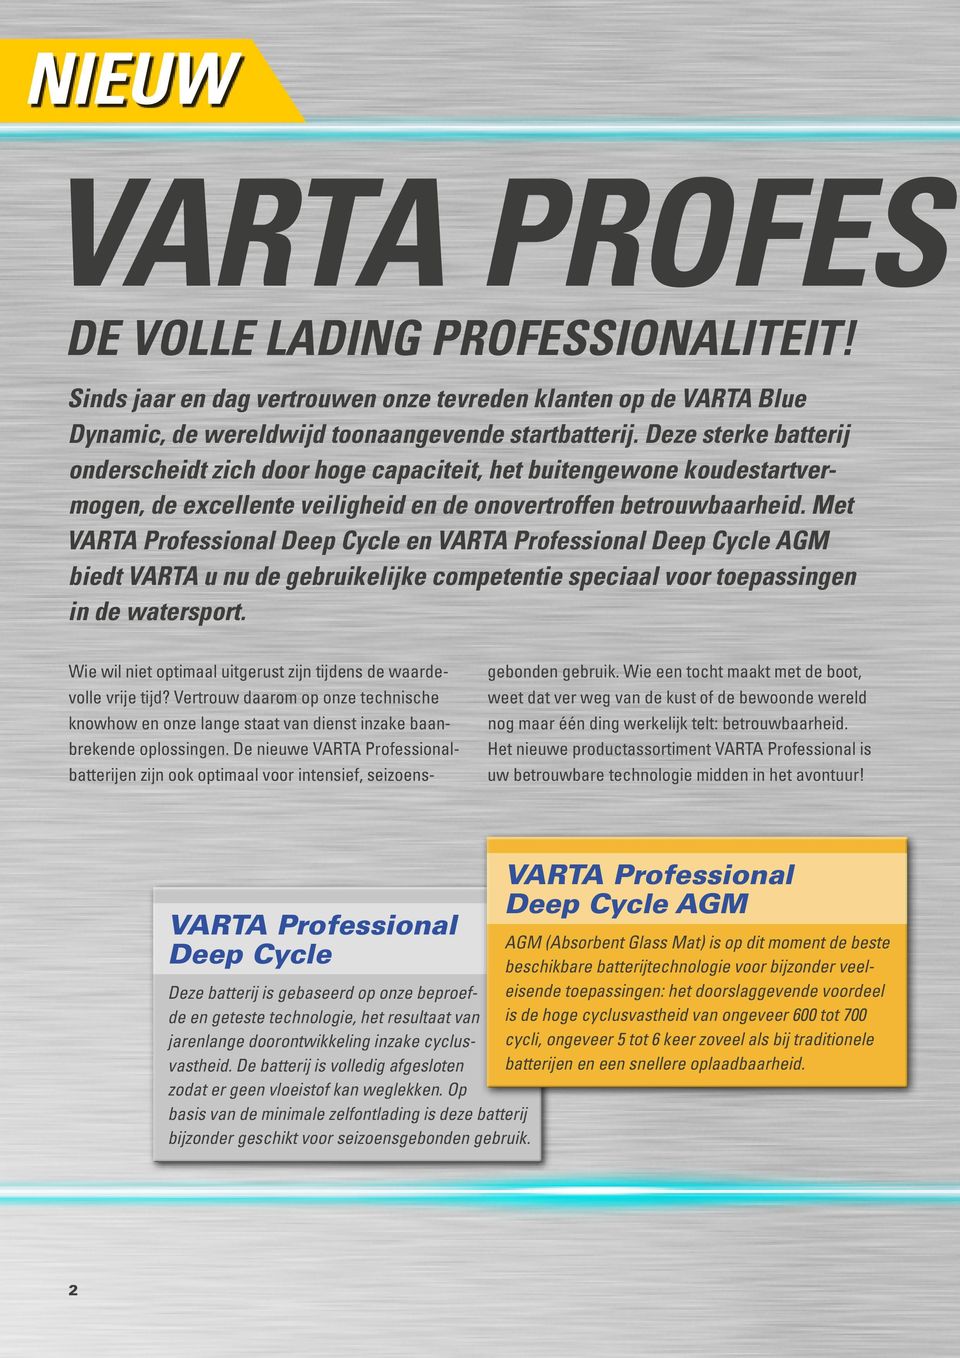 Met VARTA Professional Deep Cycle en VARTA Professional Deep Cycle AGM biedt VARTA u nu de gebruikelijke competentie speciaal voor toepassingen in de watersport.